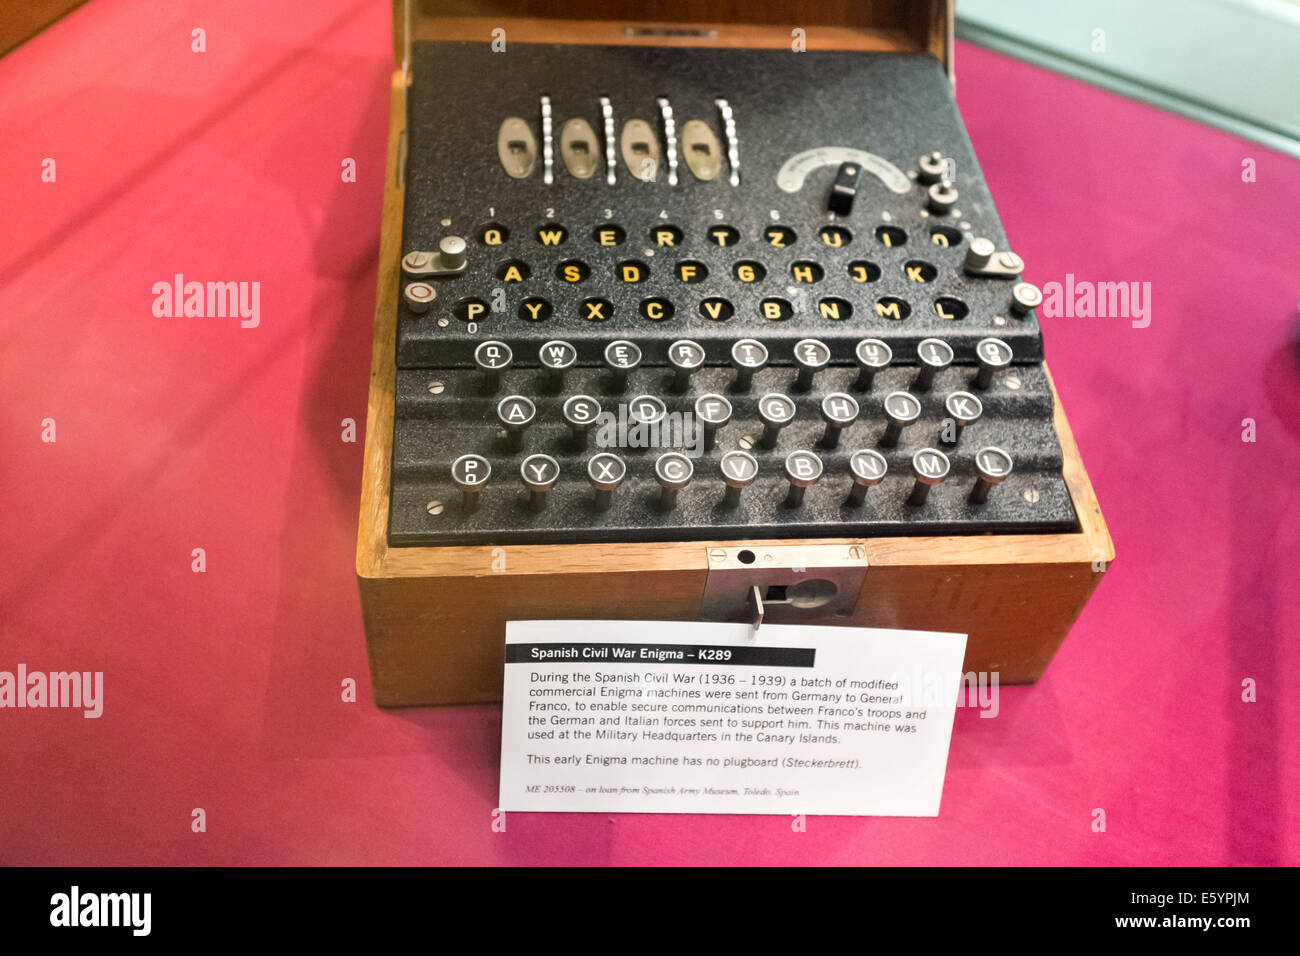 Spanischer Bürgerkrieg Chiffriermaschine Enigma K-289 Stockfoto